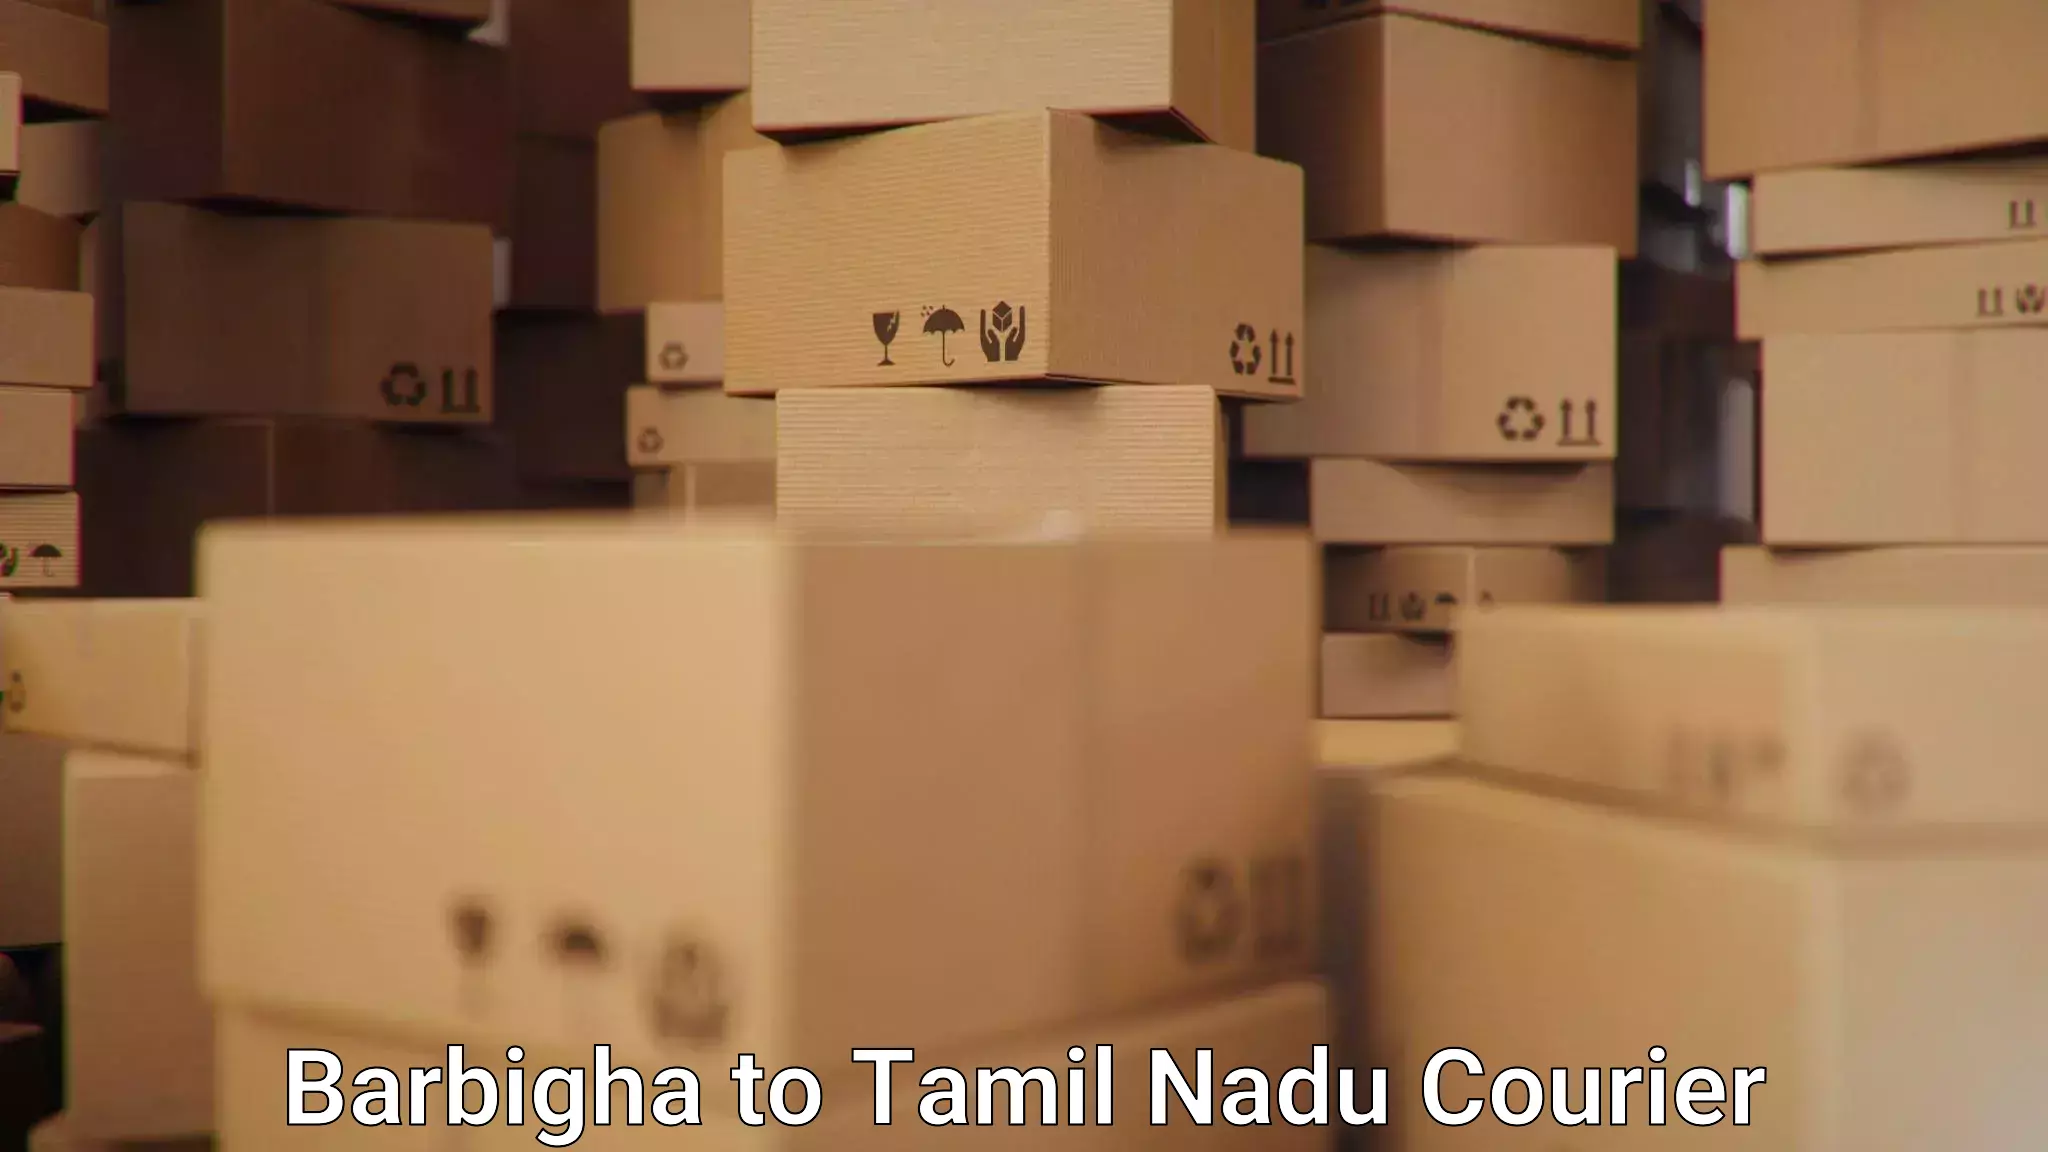 24-hour courier service Barbigha to IIIT Tiruchirappalli